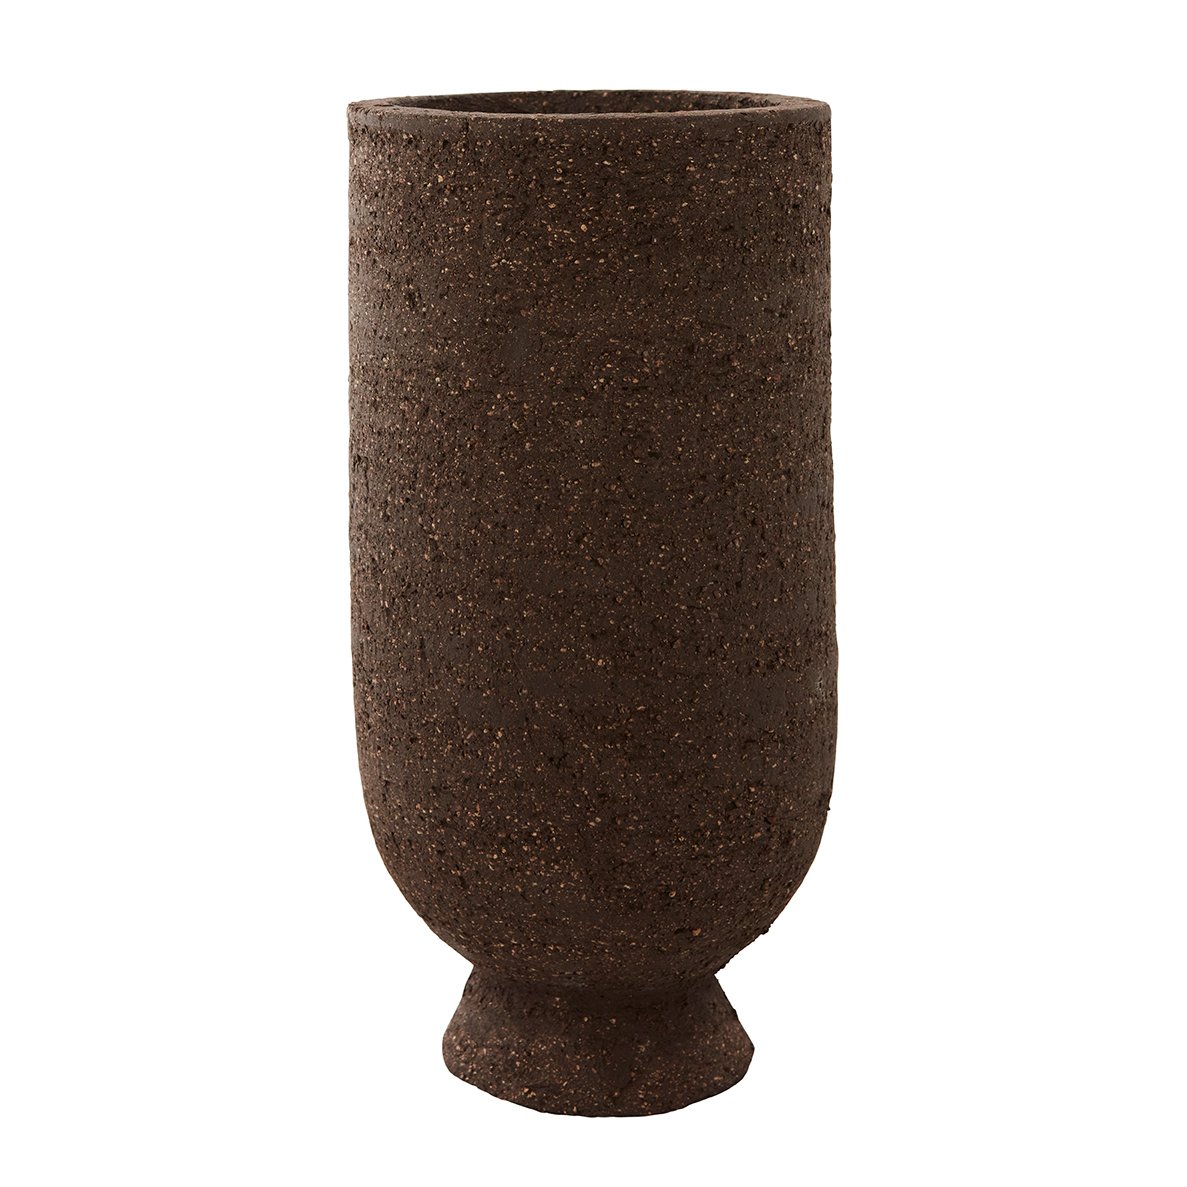 Bilde av AYTM Terra krukke/vase Ø 13 cm Java brown